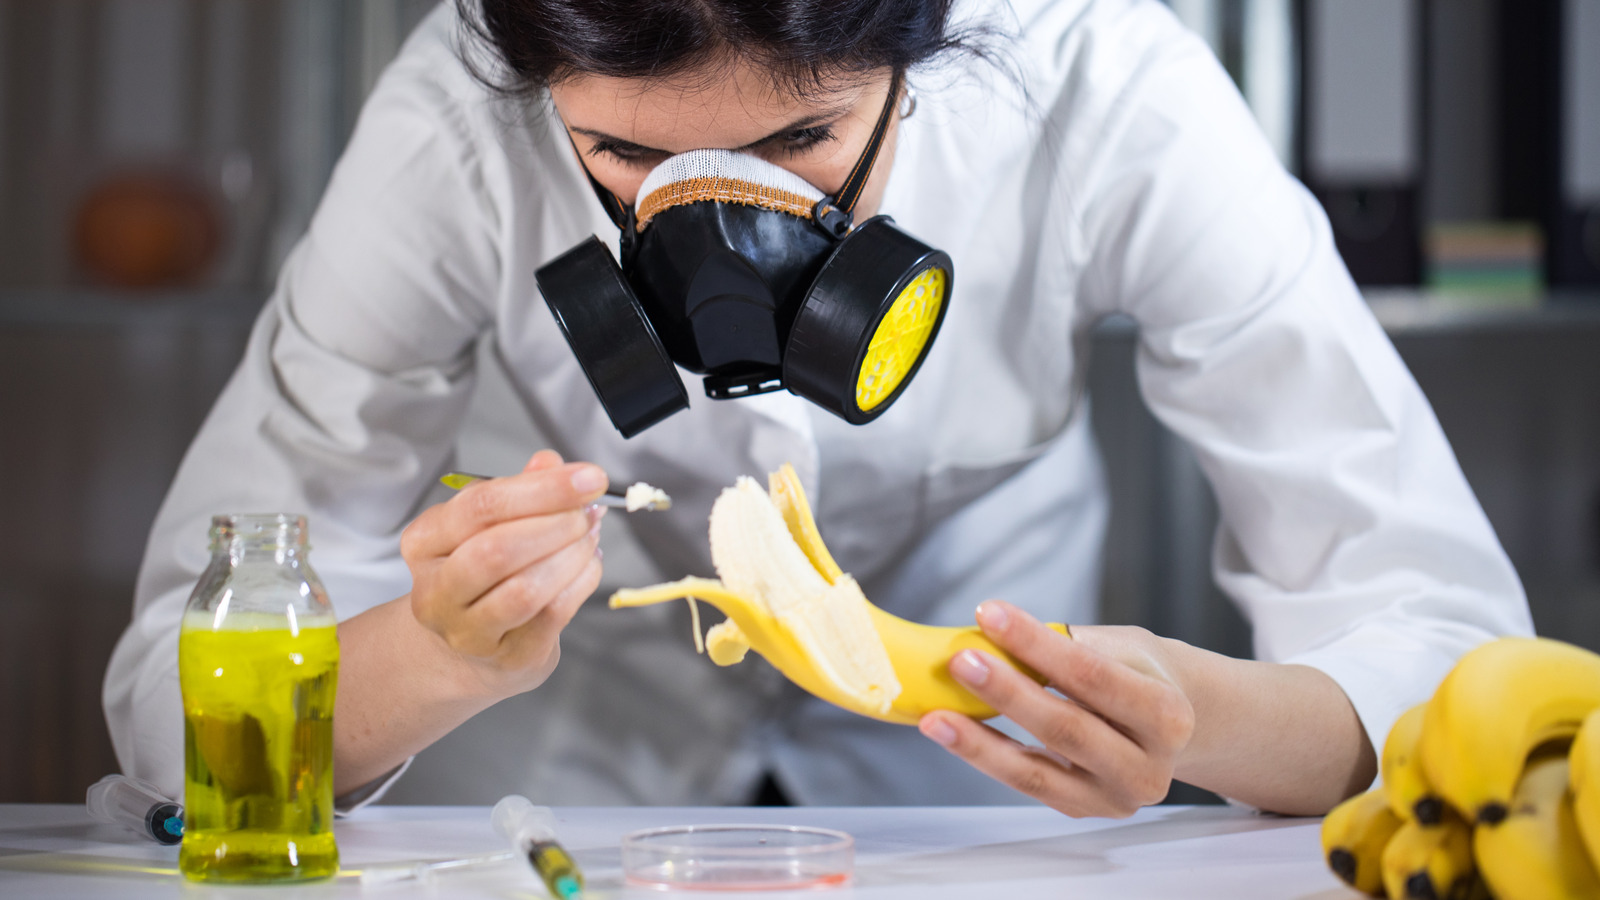 السبب العلمي وراء مذاق نكهة الموز الاصطناعية الكريهة